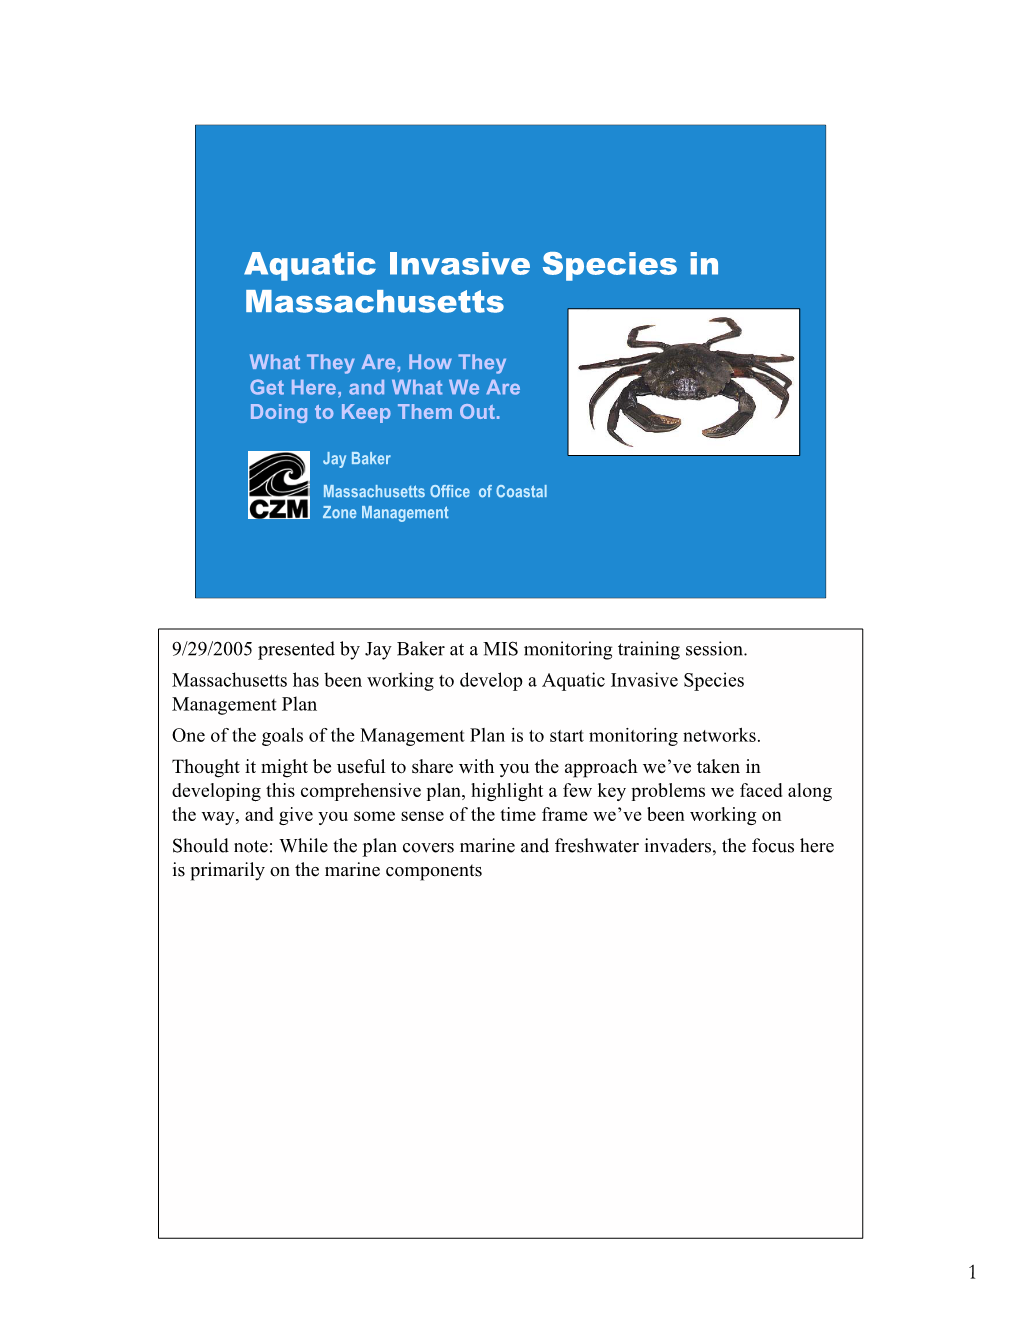 Aquatic Invasive Species in Massachusetts